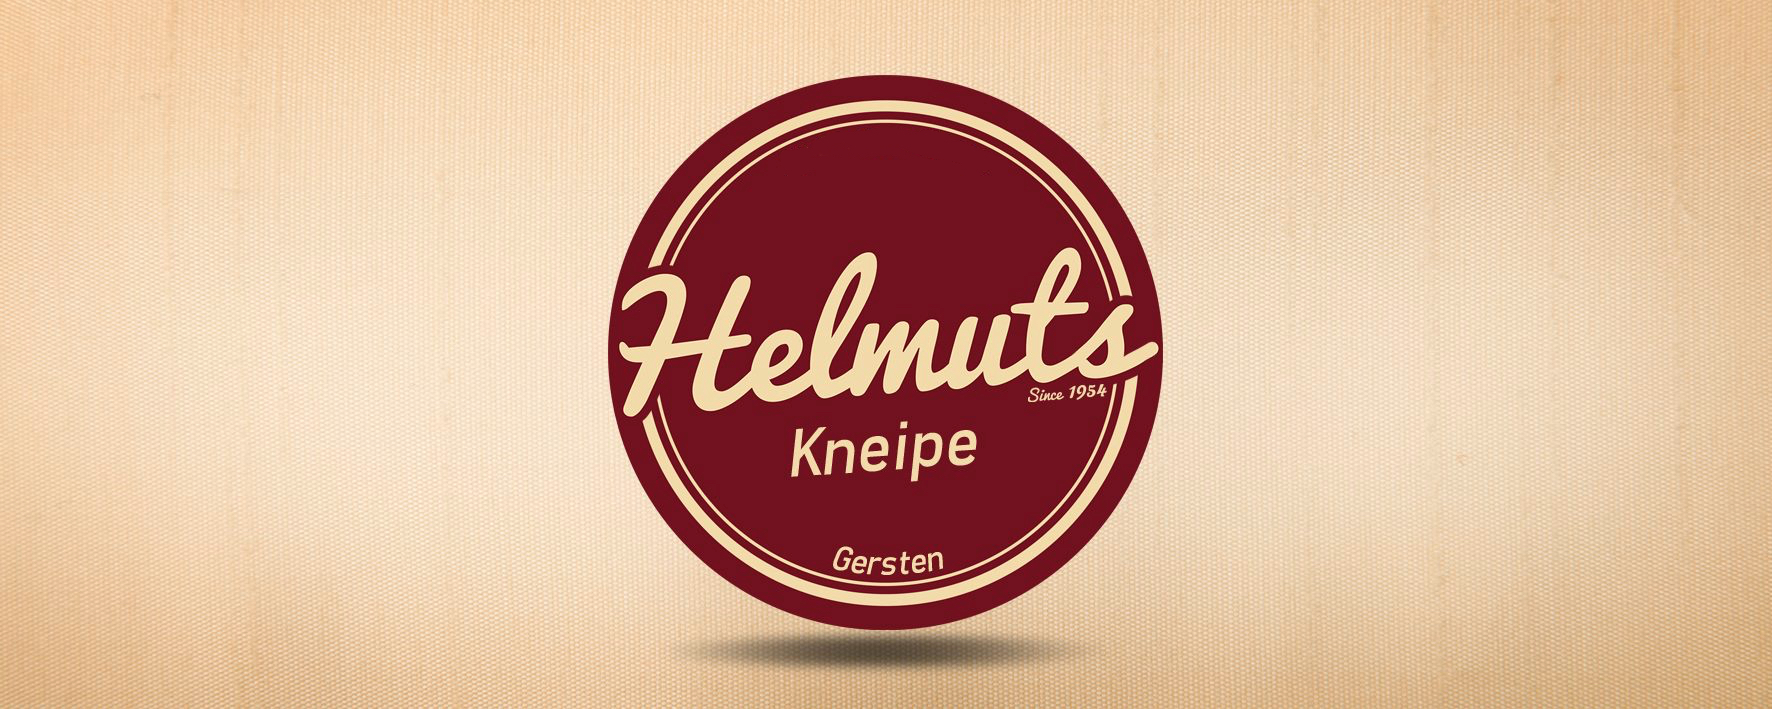 Logo Gersten: Helmuts Kneipe